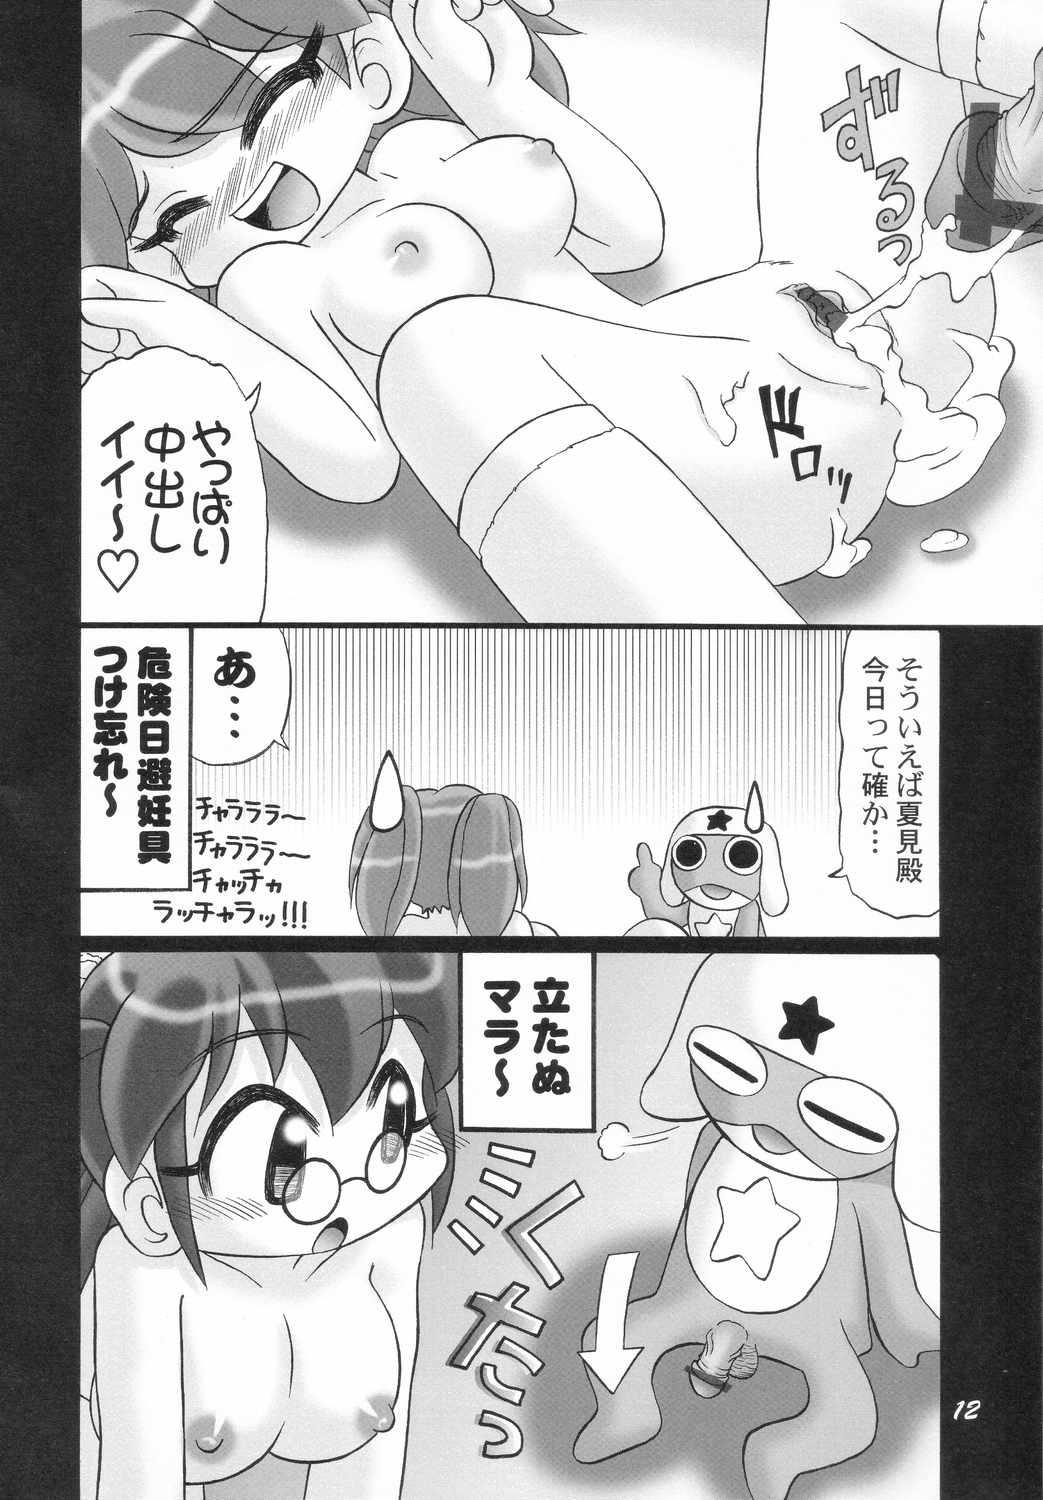 Dildos Eroro Gunsou - Keroro gunsou Banho - Page 11